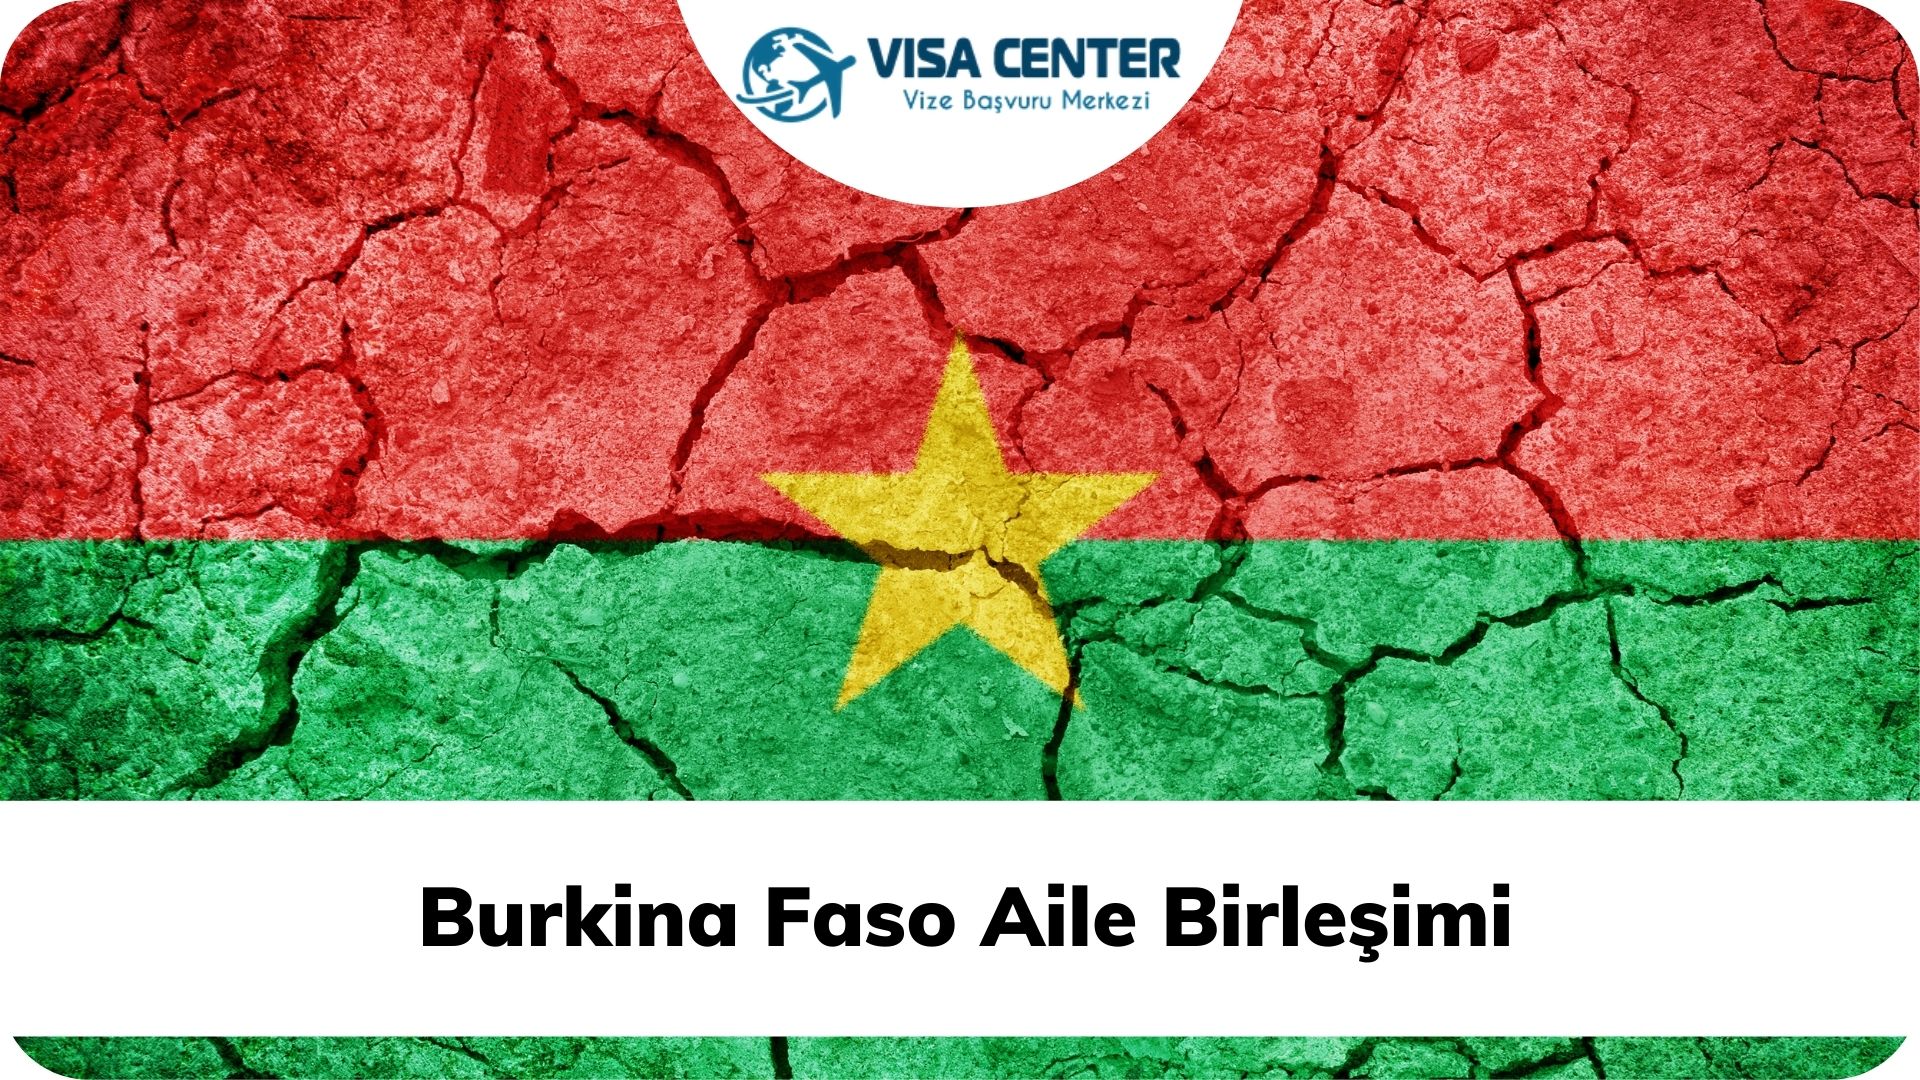 Burkina Faso Aile Birleşimi